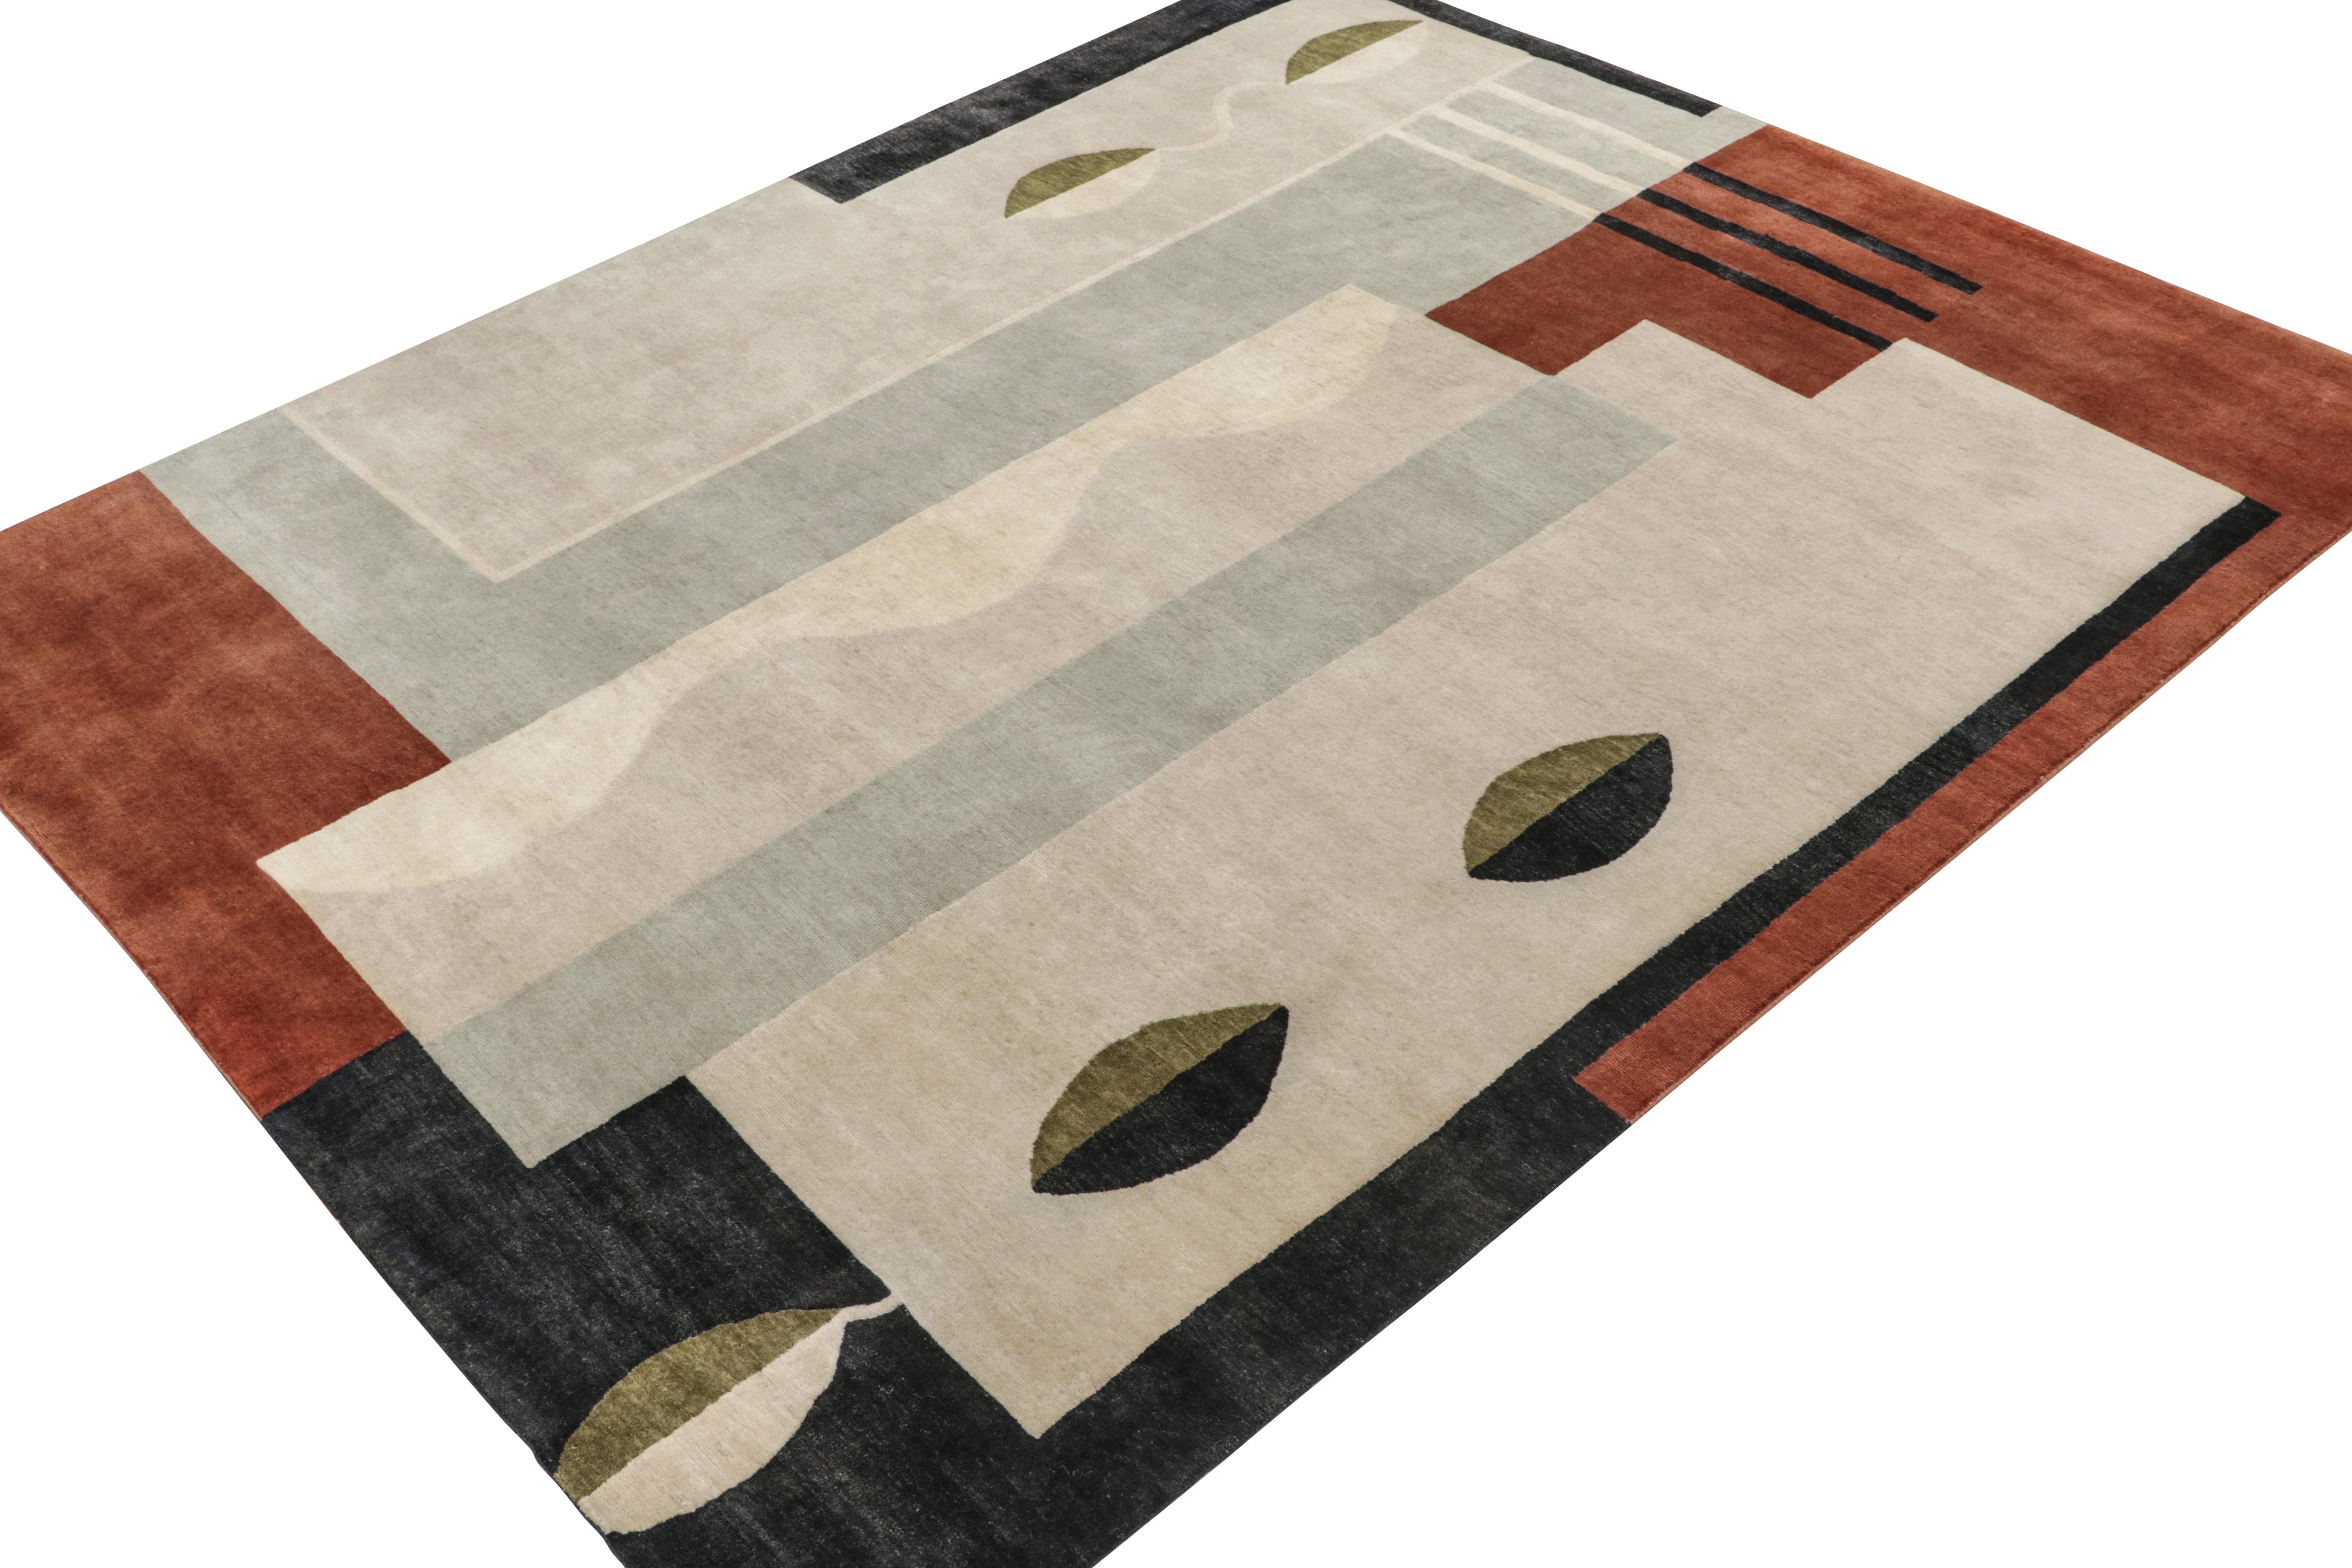 Dieser 8x10 große Teppich ist die nächste Ergänzung der klassisch inspirierten French Deco Collection'S von Rug & Kilim. Das aus Wolle, Seide und Baumwolle handgeknüpfte Design lehnt sich an das titelgebende  Art-Déco-Teppiche im Stil der 1920er